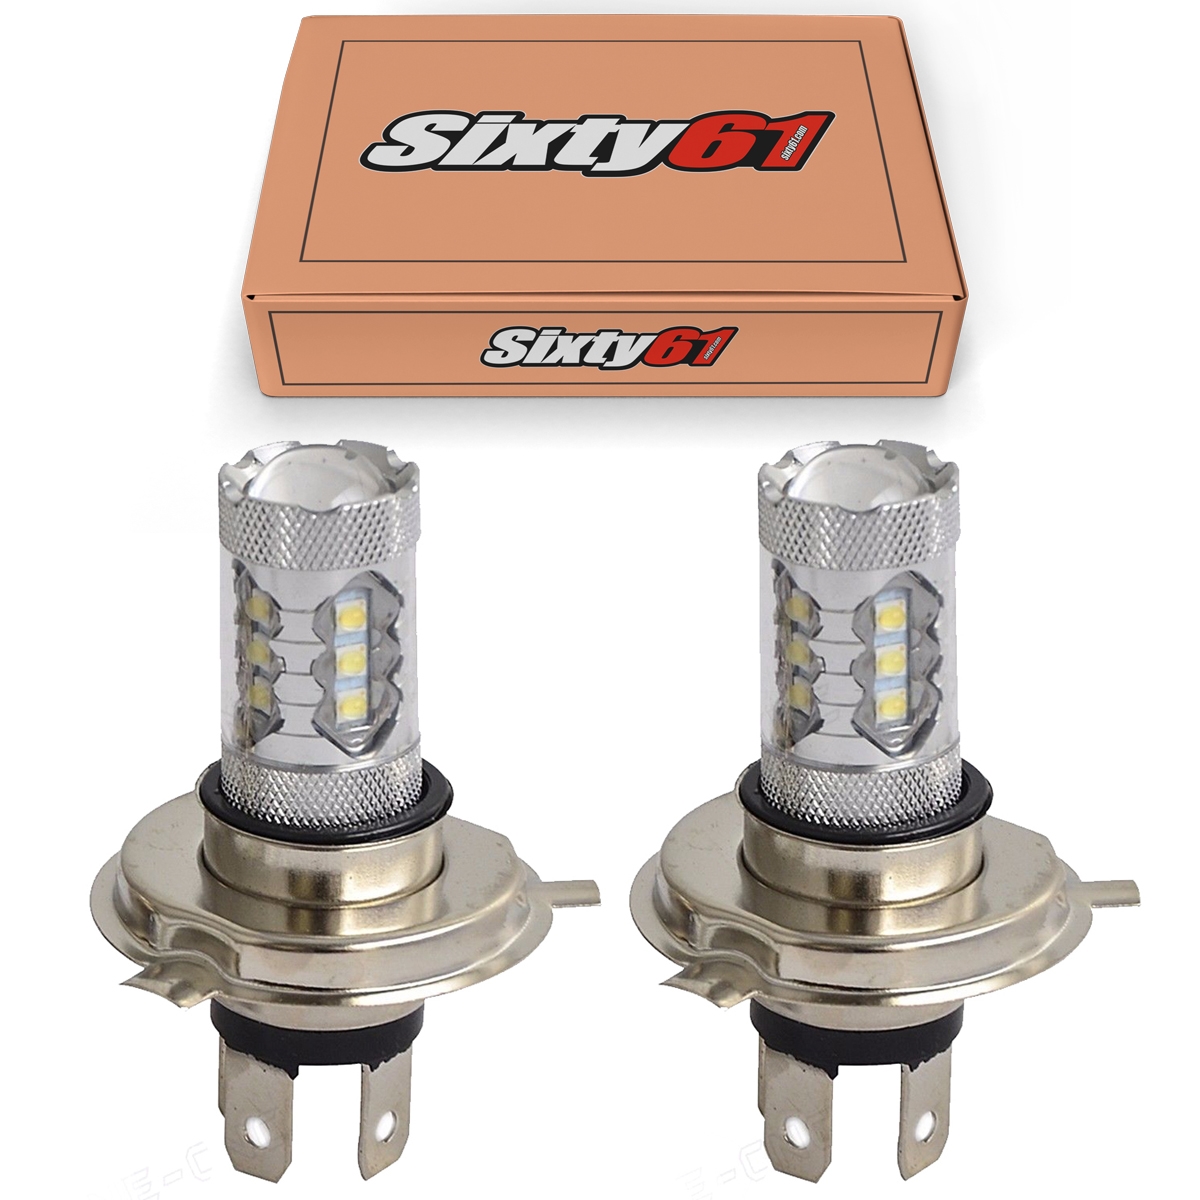 Sixty61 LED Headlight Bulbs for Ski Doo Z583 1997 1998 1999